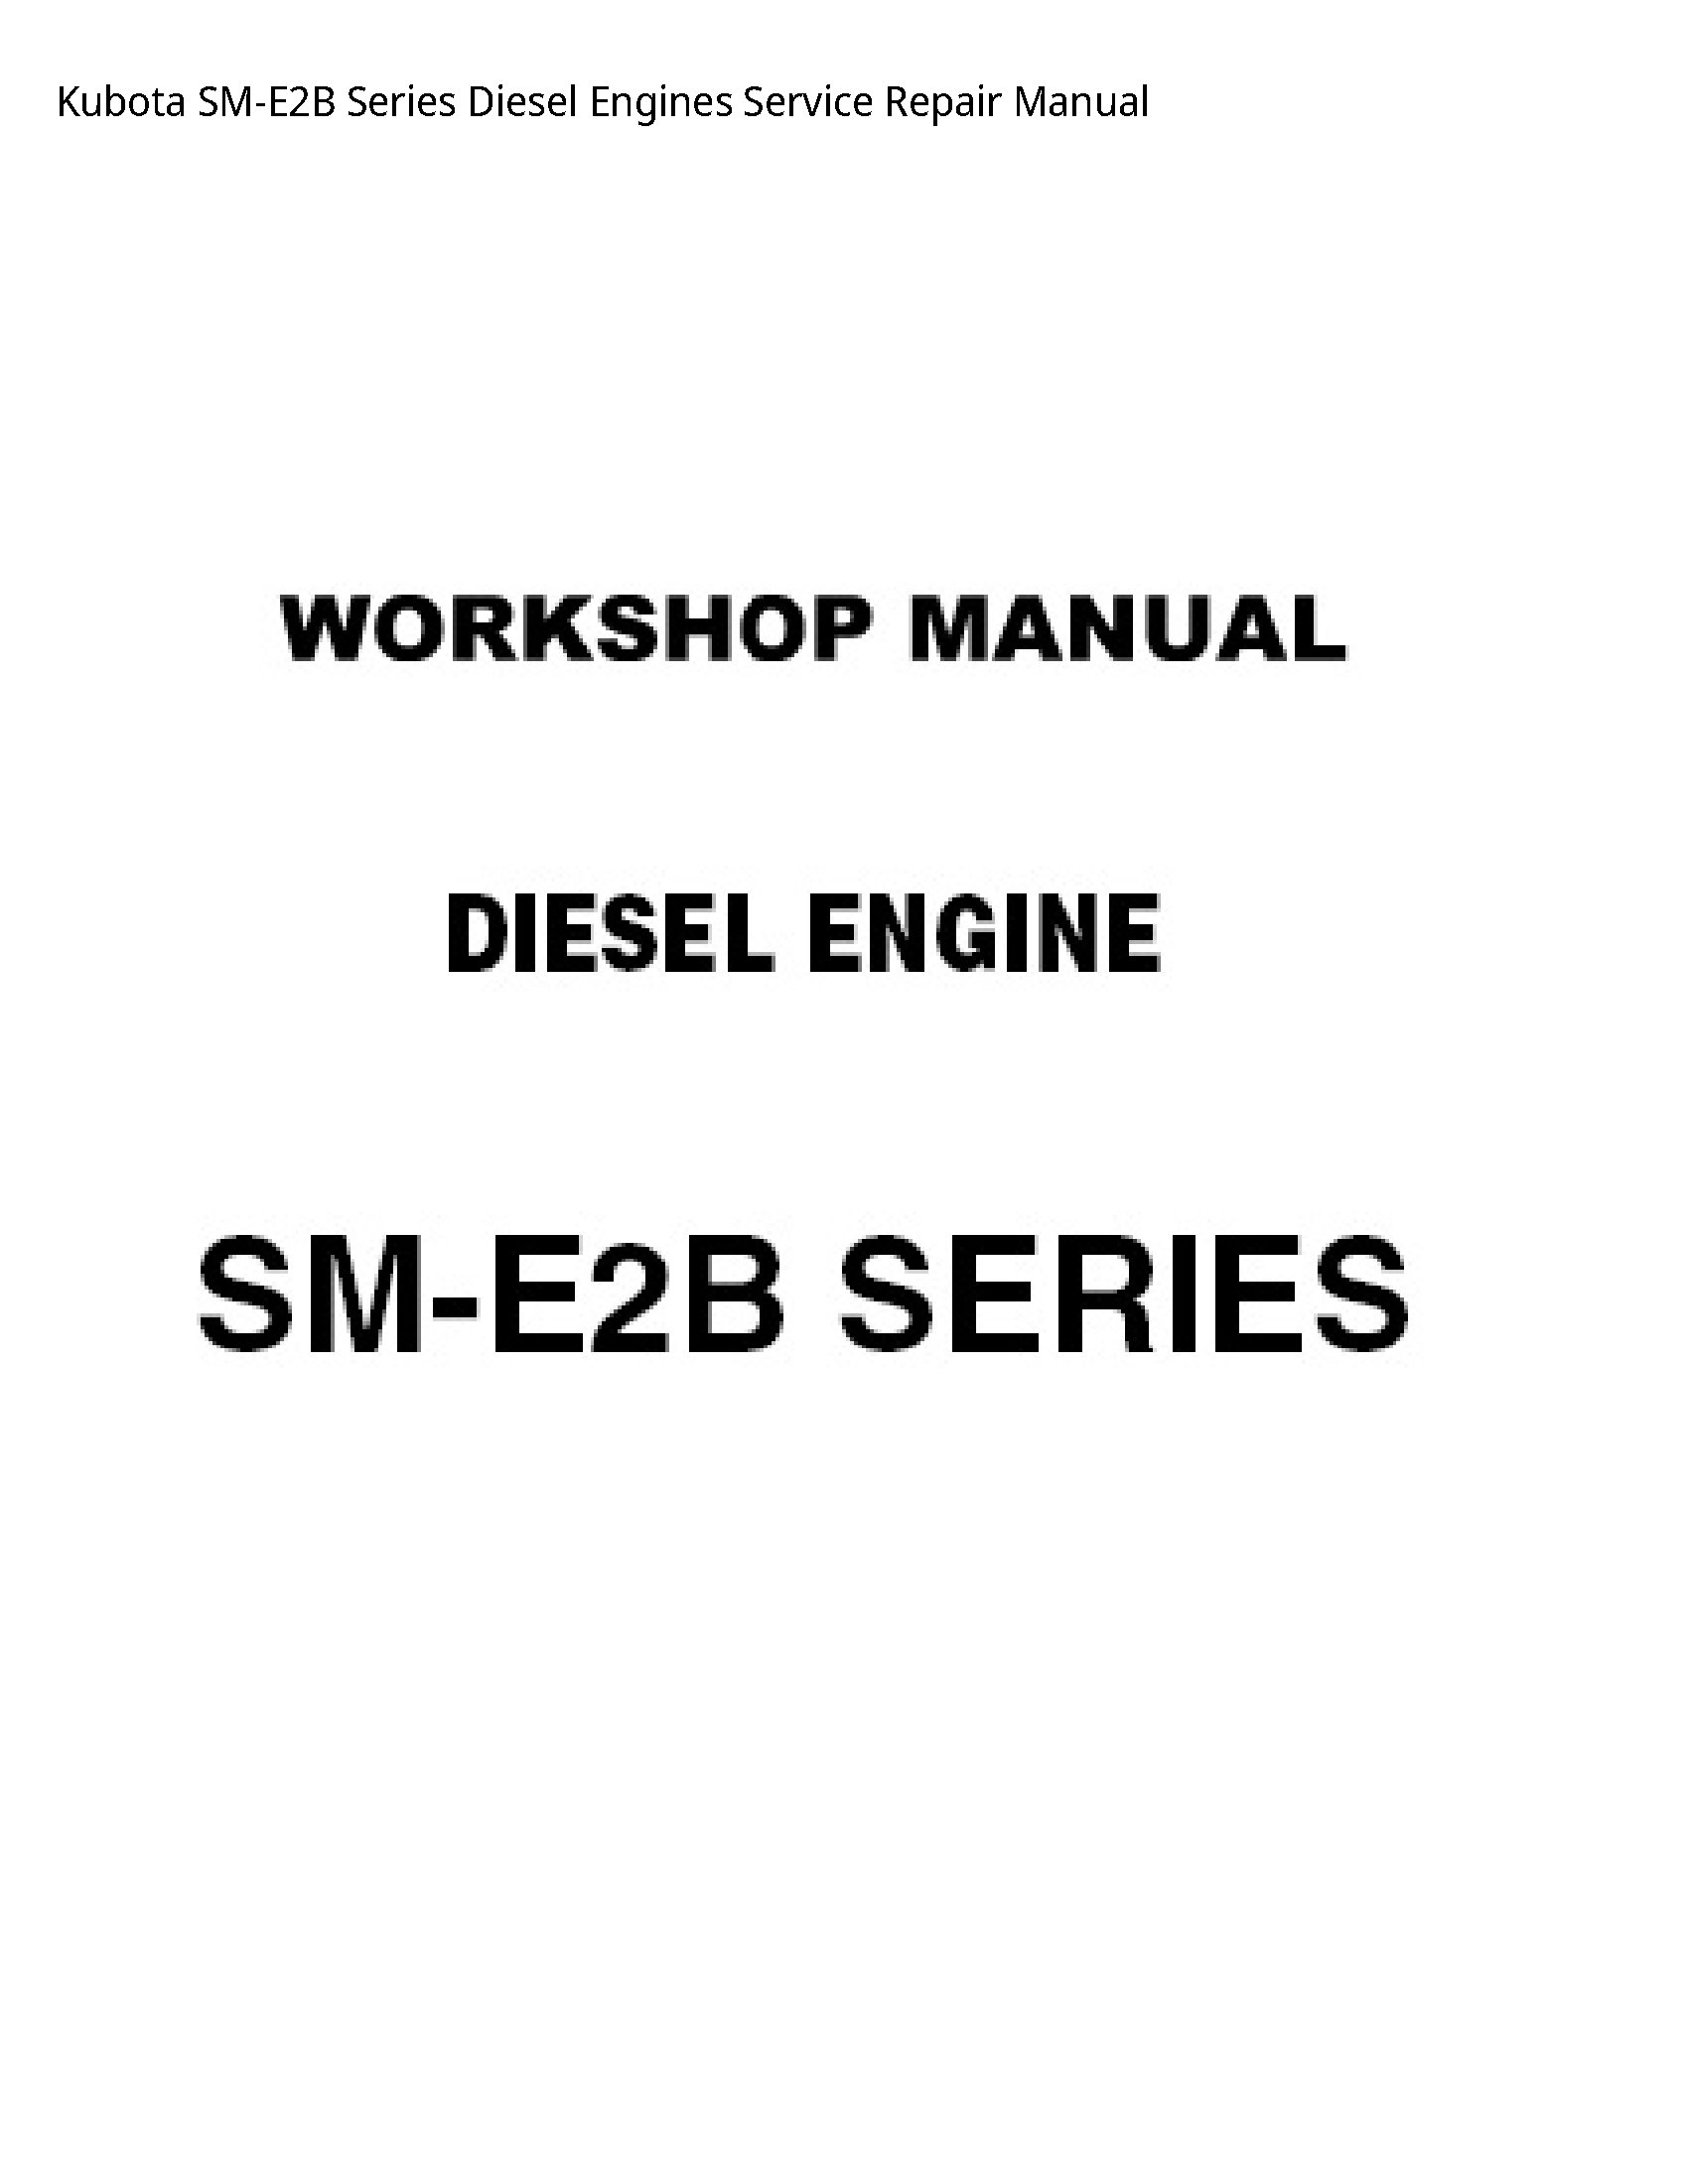 Kubota SM-E2B Series Diesel Engines manual